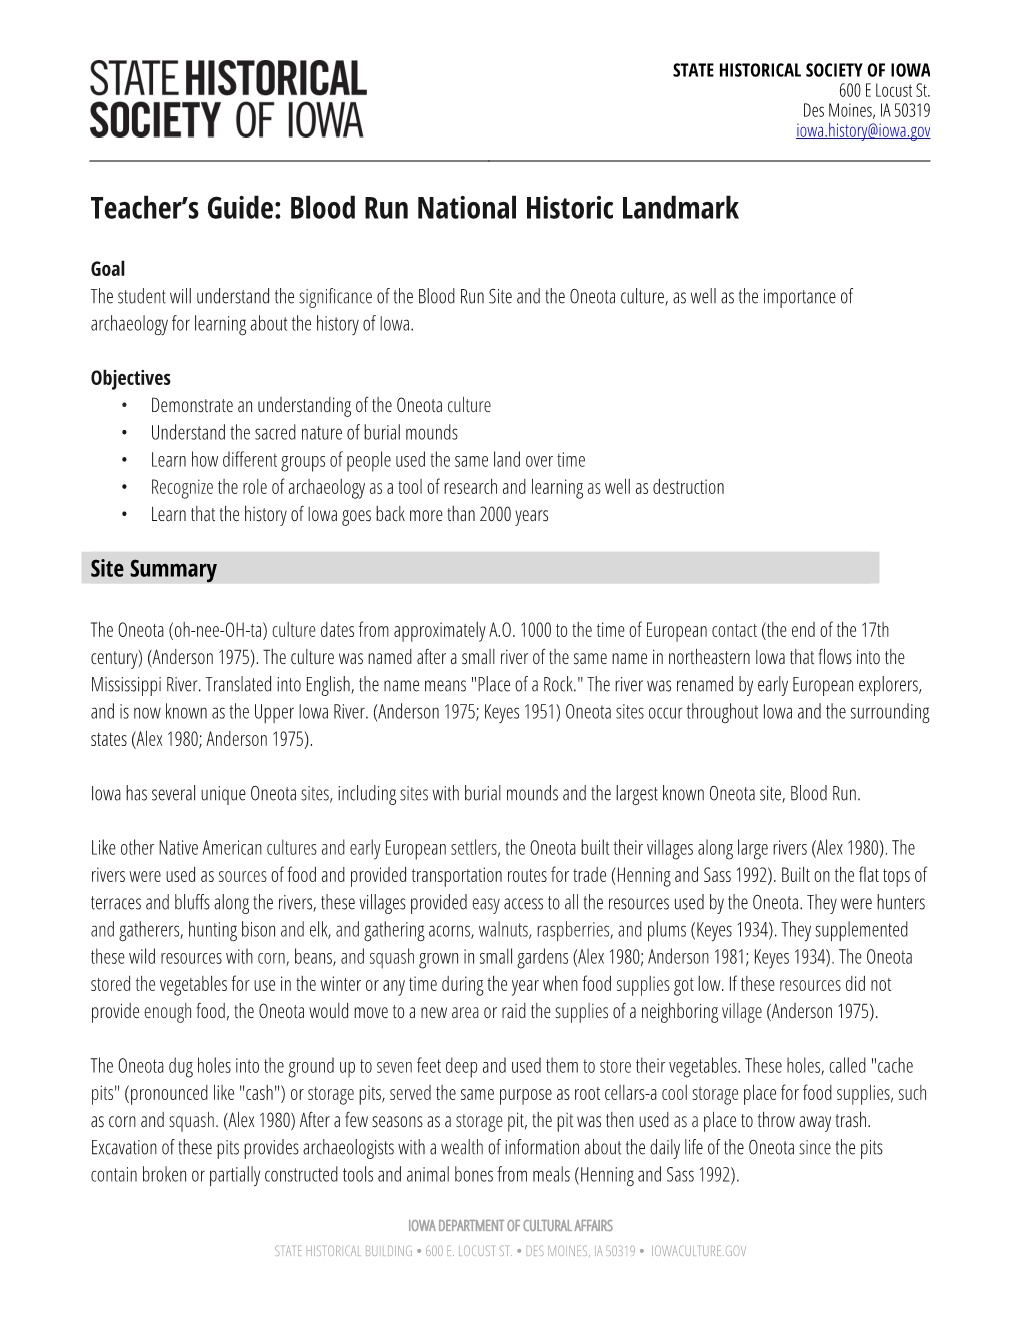 Teacher's Guide: Blood Run National Historic Landmark